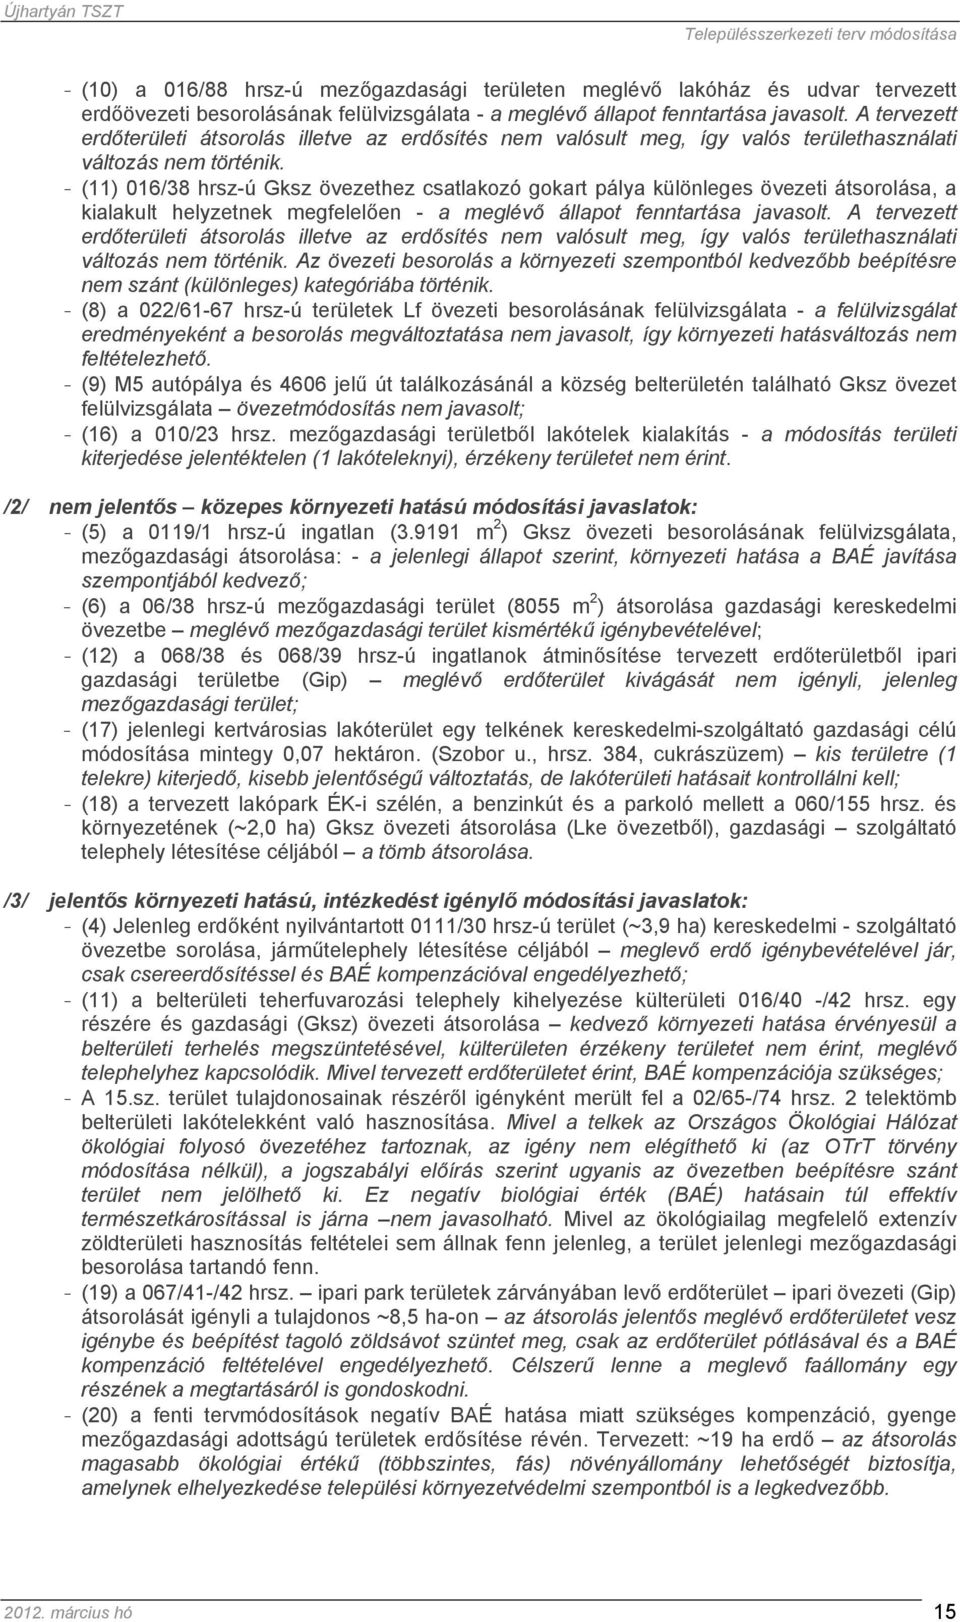 - (11) 016/38 hrsz-ú Gksz övezethez csatlakozó gokart pálya különleges övezeti átsorolása, a kialakult helyzetnek megfelelően - a meglévő állapot fenntartása javasolt.